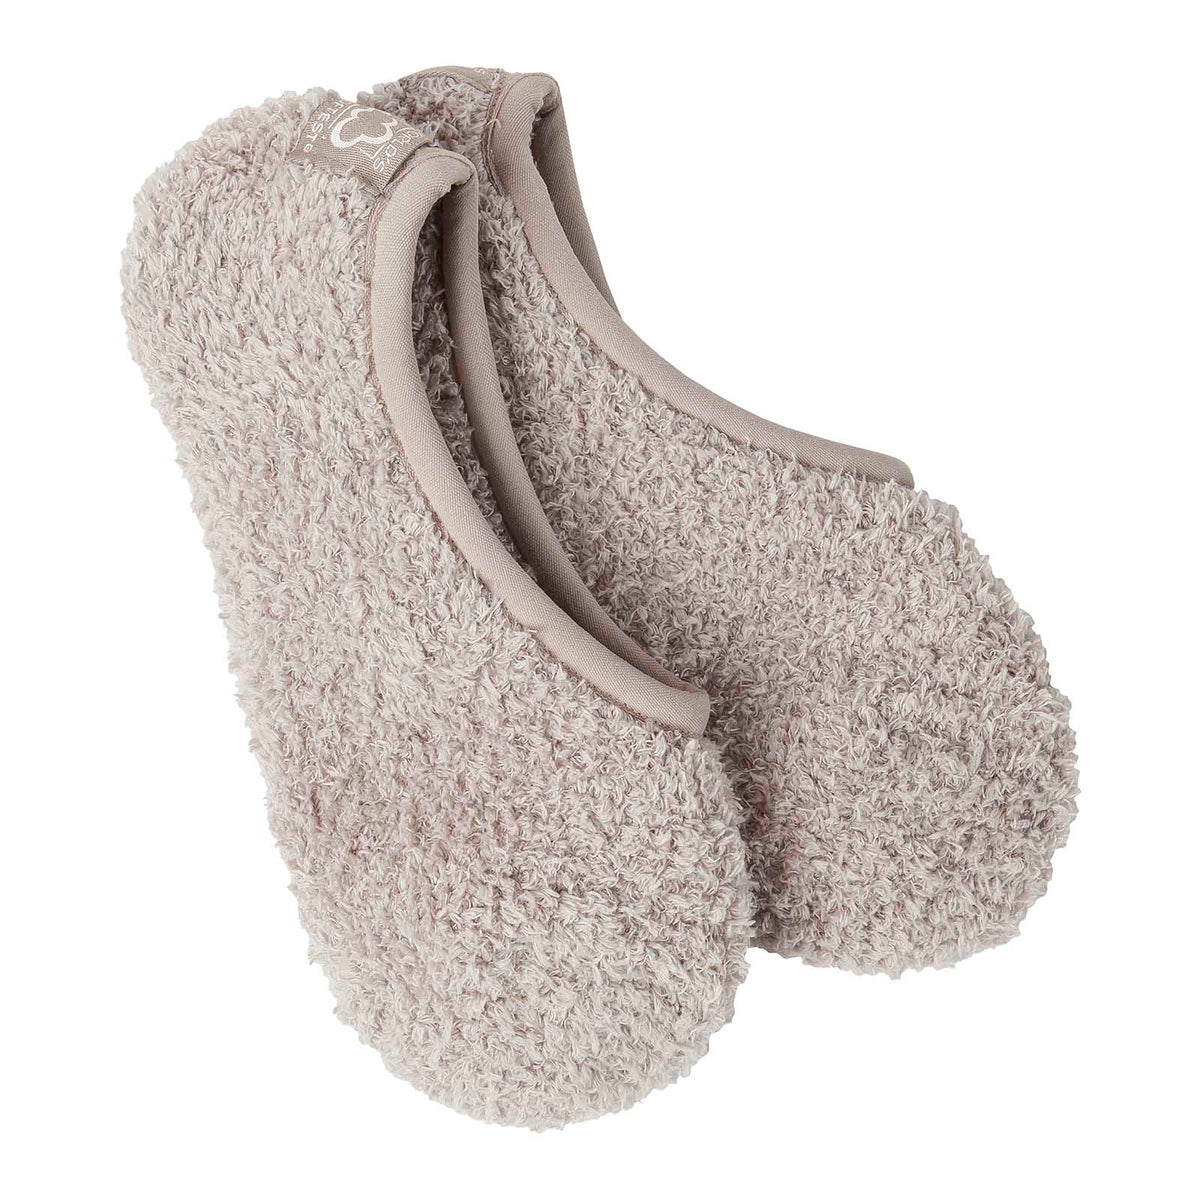 Cozy footsie socks